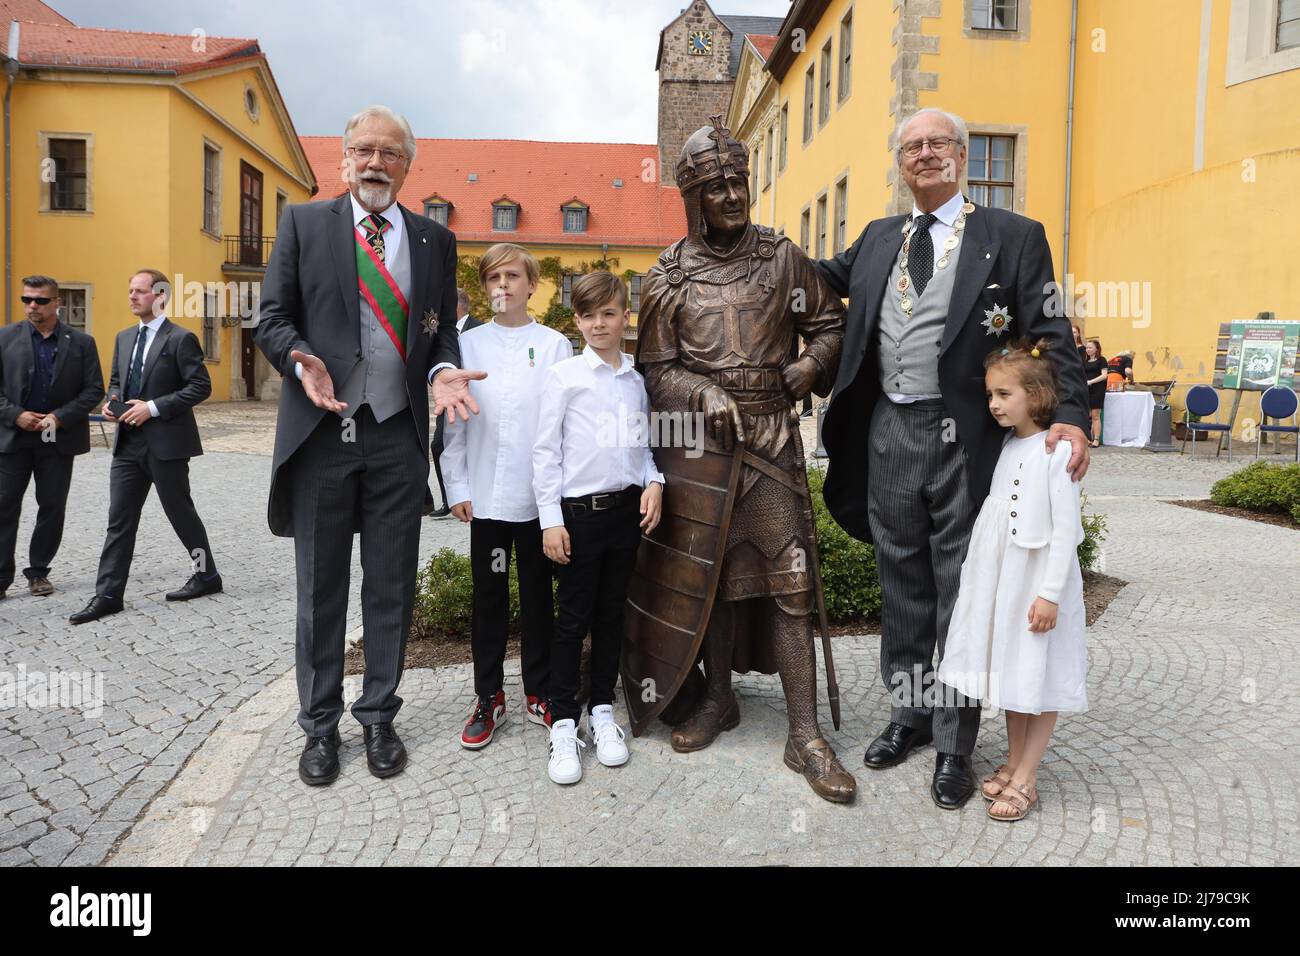 07 maggio 2022, Sassonia-Anhalt, Ballenstedt: Eduard Principe d'Anhalt (r.) si erge con i suoi nipoti (da sinistra) il Principe Leopold, il Principe Maxime e la Principessa Filine al monumento ridisegnato ad Albrecht l'Orso. Eduard von Anhalt festeggia il suo 80th compleanno a Ballenstedt. Allo stesso tempo si è svolta l'investitura. Nell'ambito dell'investitura, le persone sono onorate ogni anno per le realizzazioni speciali dell'Ordine della Casa Ascense 'Albrecht l'Orso'. L'investitura avviene alla presenza di Eduardo Principe d'Anhalt. Foto: Matthias Bein/dpa/ZB Foto Stock